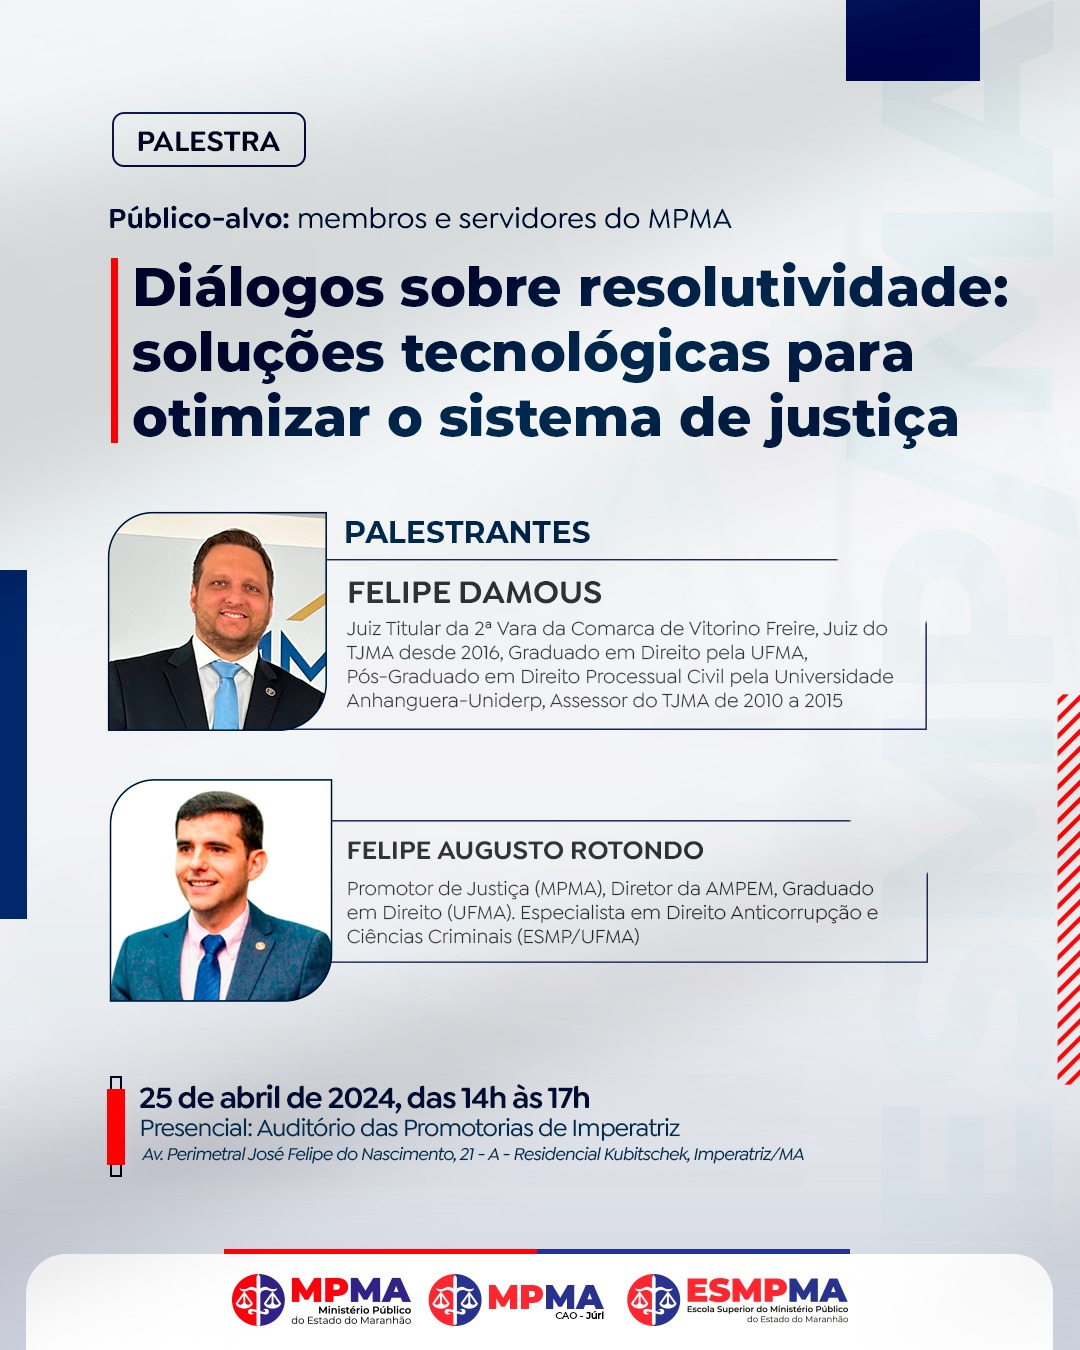 Palestra - Diálogos sobre resolutividade: soluções tecnológicas para otimizar o sistema de justiça